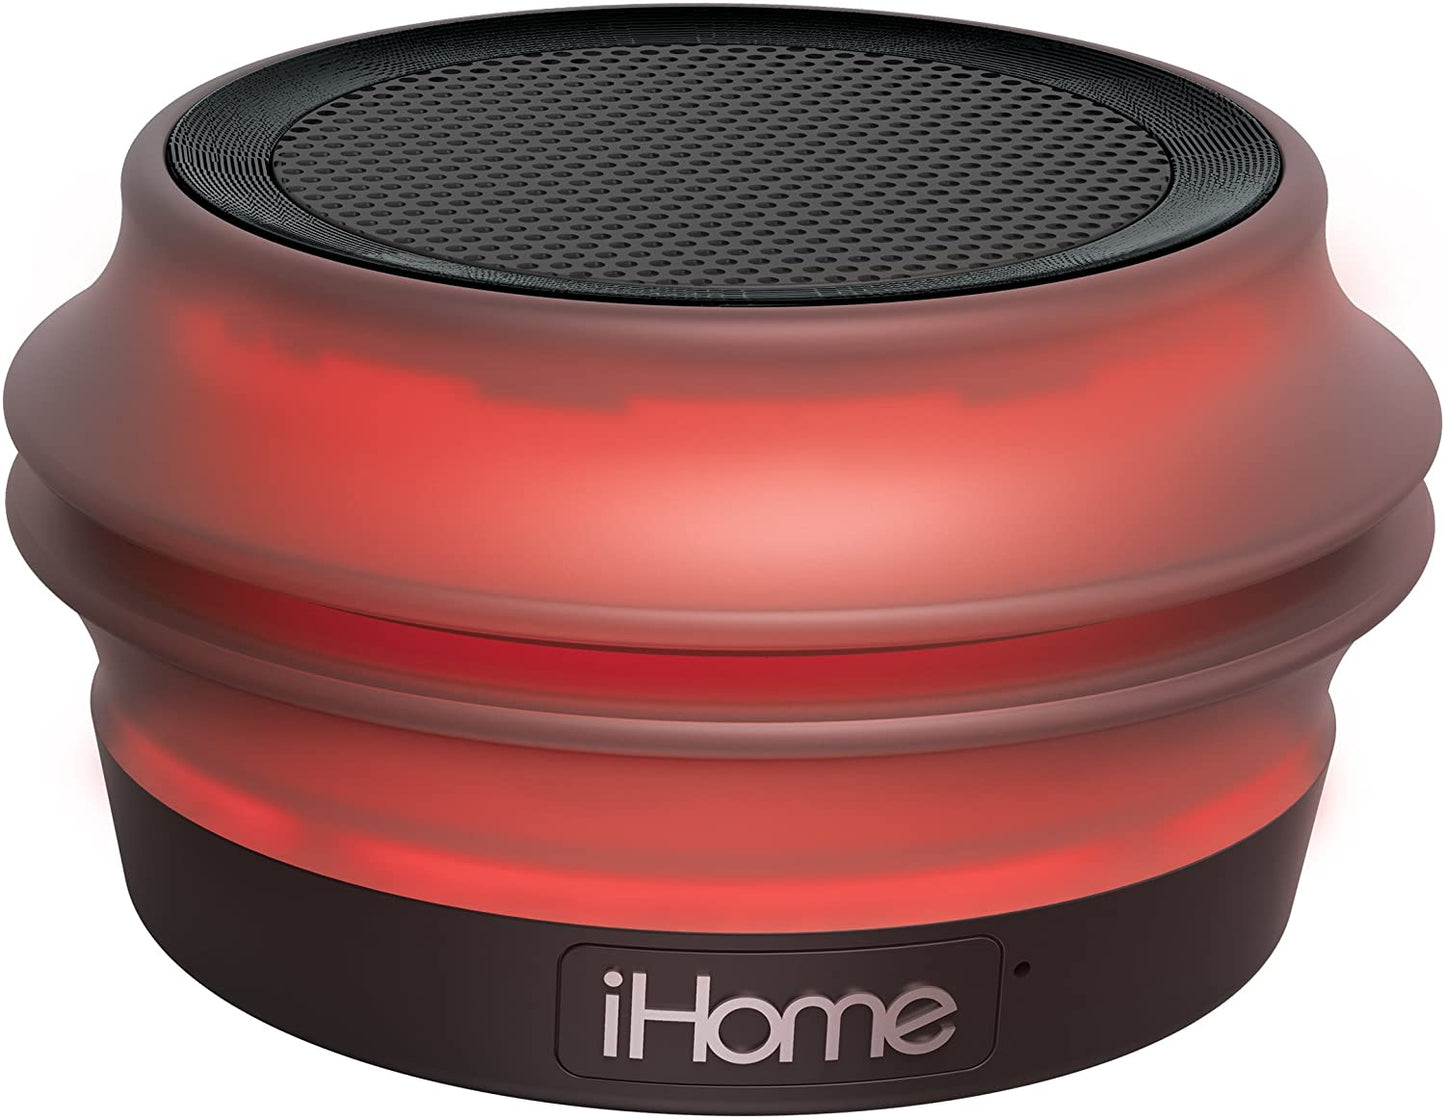 ihome iBT62BC haut-parleur rechargeable Bluetooth à changement de couleur - boîte ouverte